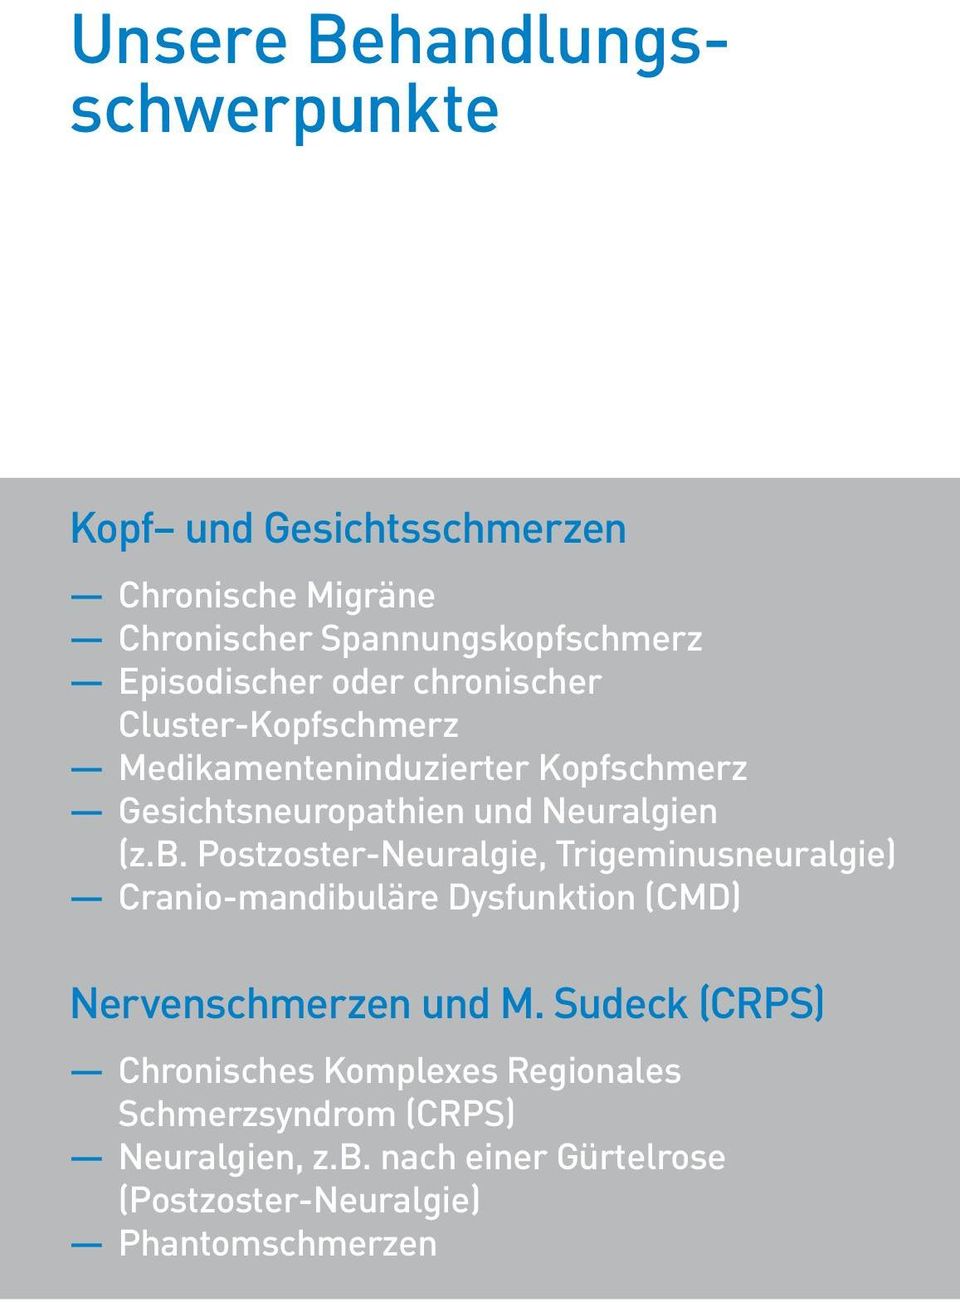 (z.b. Postzoster-Neuralgie, Trigeminusneuralgie) Cranio-mandibuläre Dysfunktion (CMD) Nervenschmerzen und M.